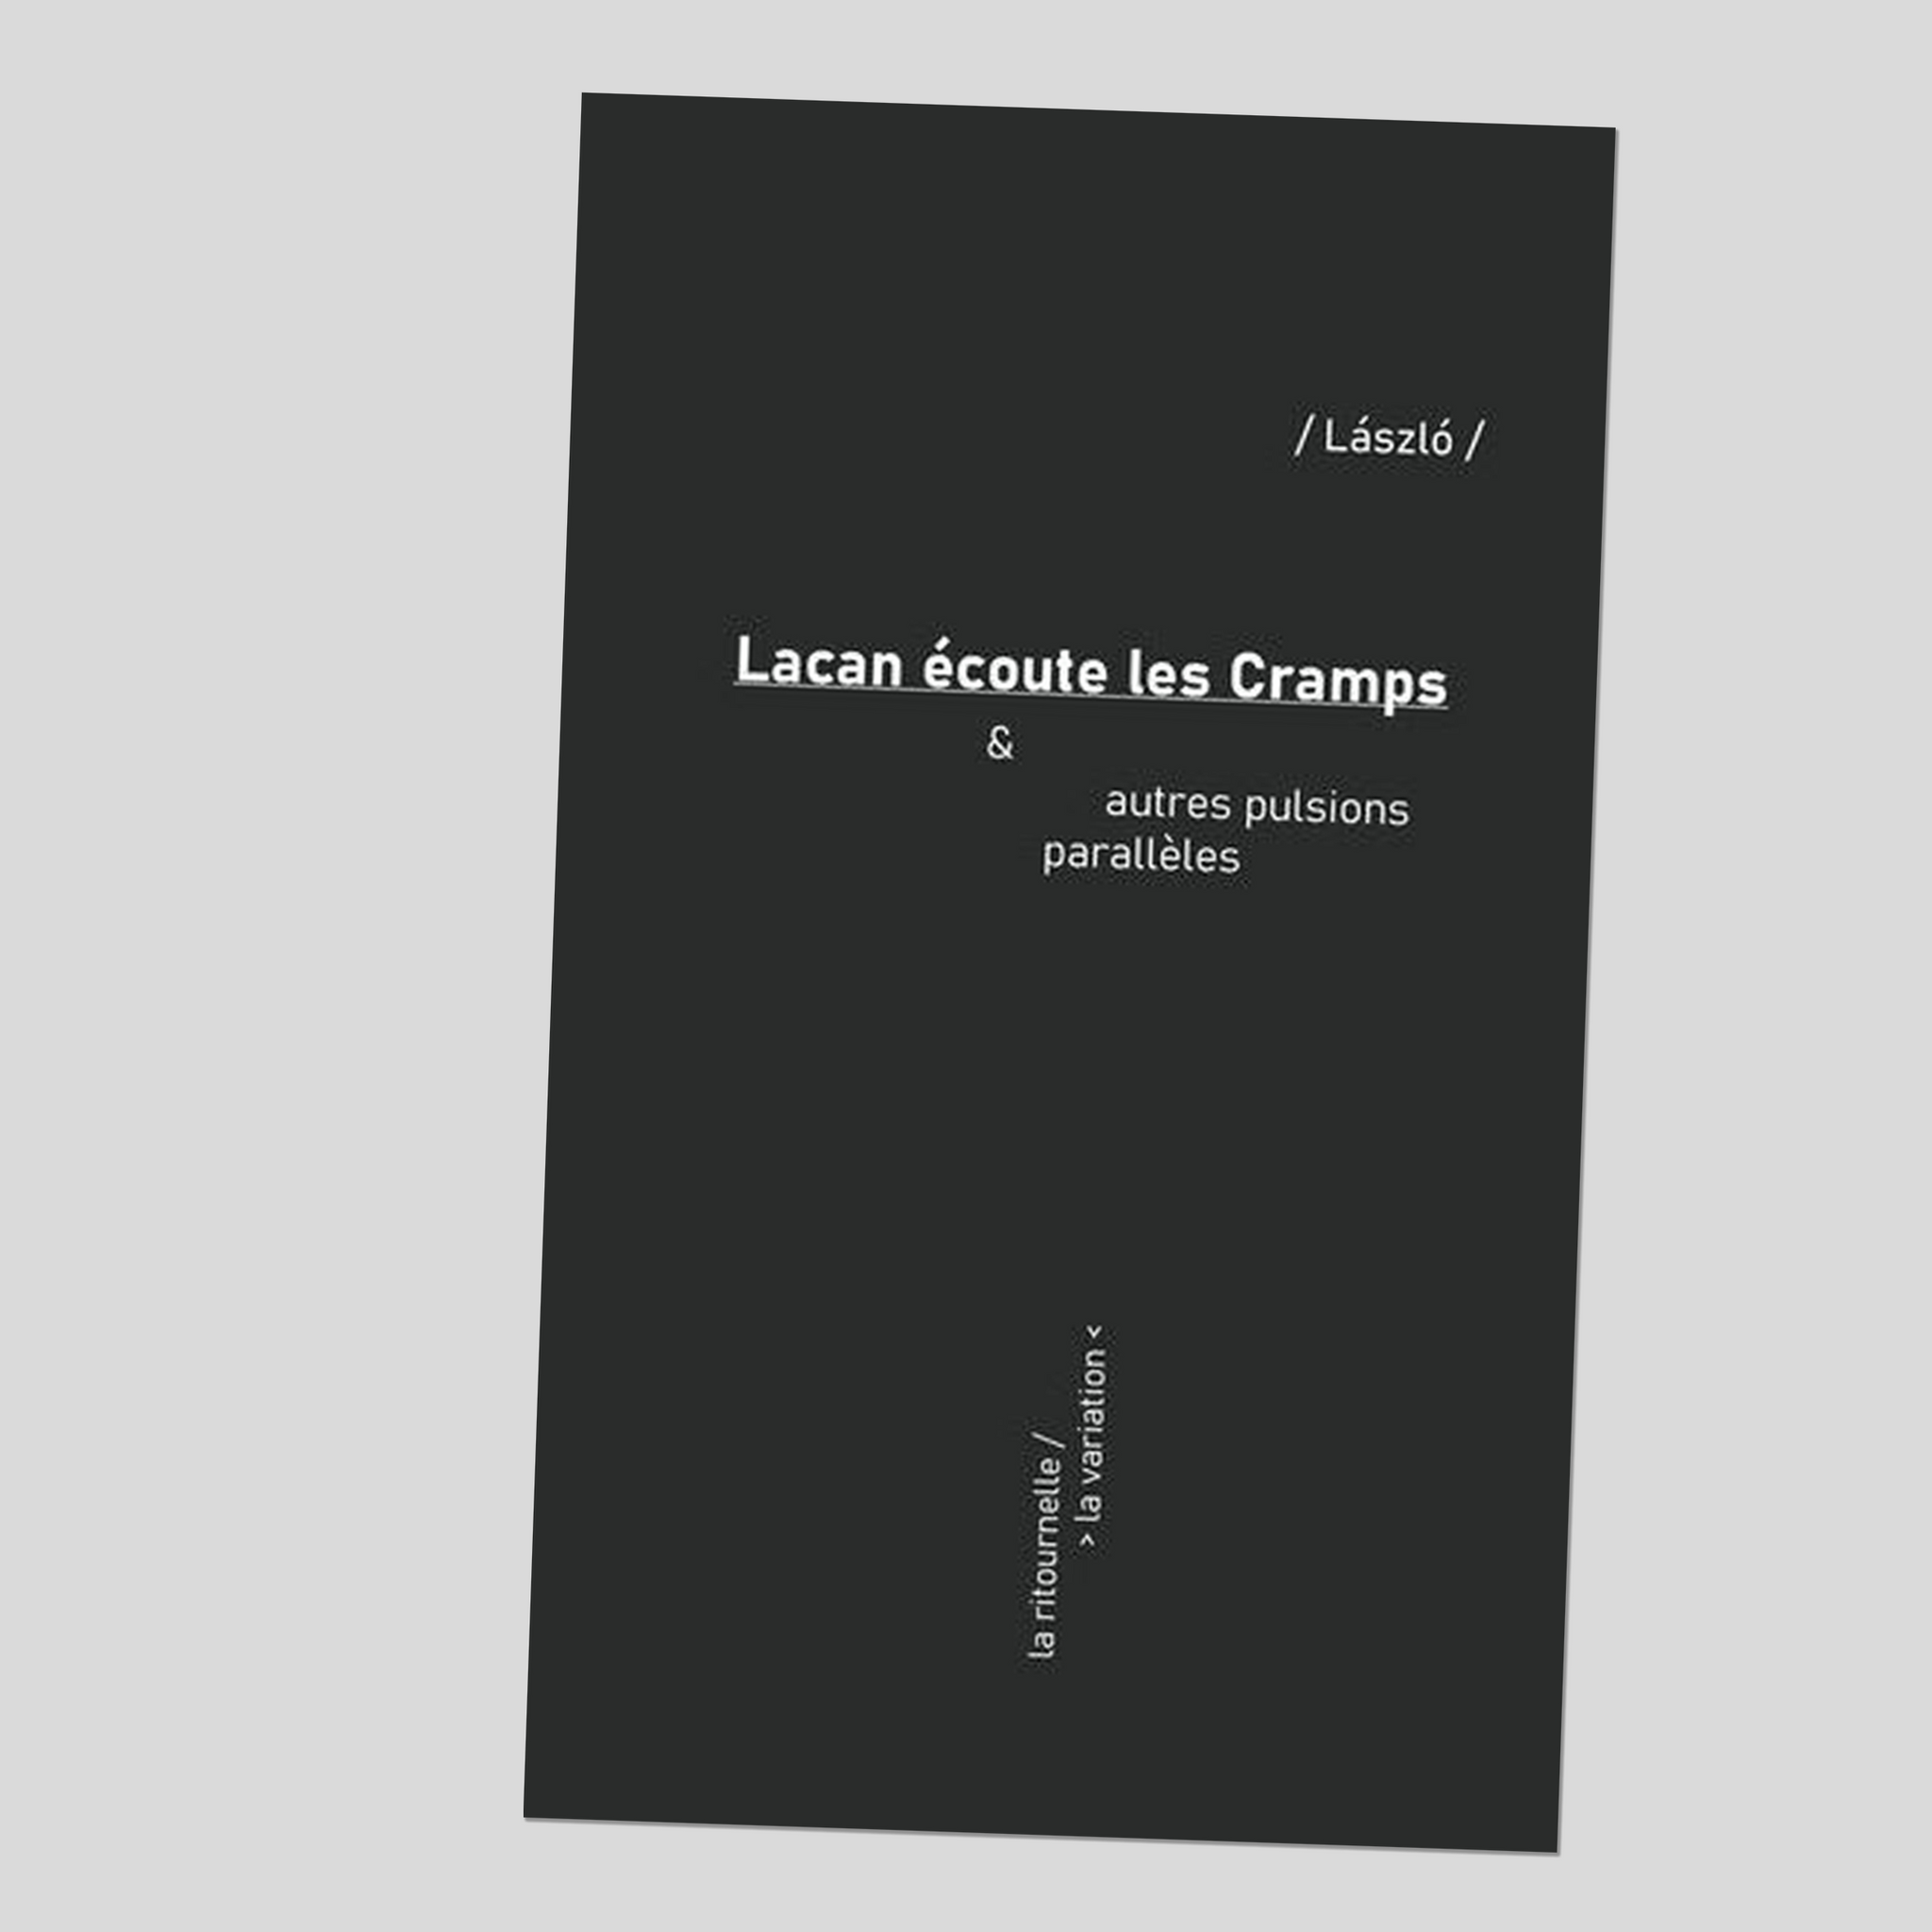 Lacan écoute les Cramps & autres pulsions parallèles - László